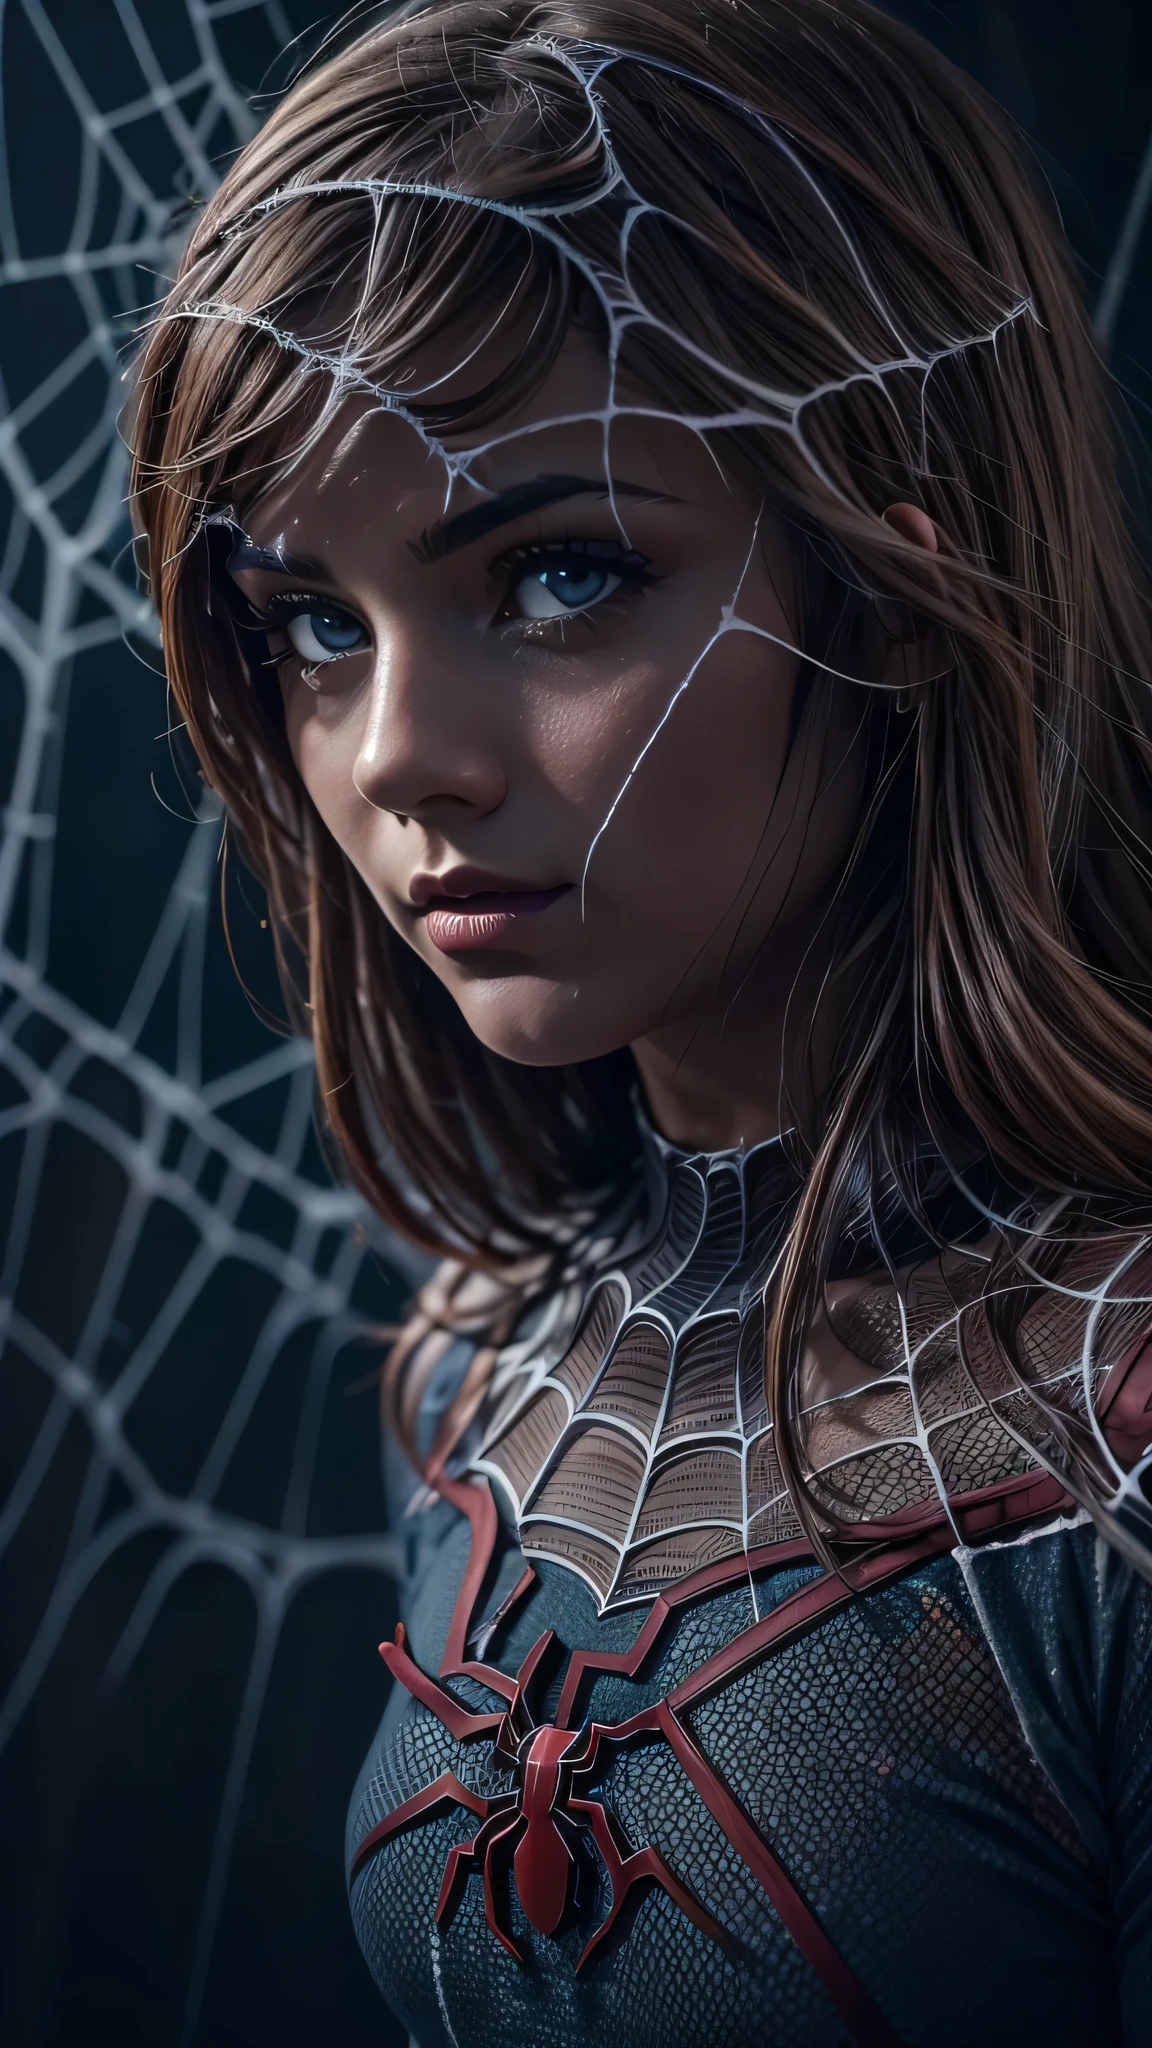 Uma garota vestindo uma fantasia de Homem-Aranha, cercado por teias de aranha fantasmagóricas, em uma atmosfera sombria e estranha, Detalhado e realista, iluminação cinematográfica, cores dramáticas, Tons silenciados, atmosfera temperamental